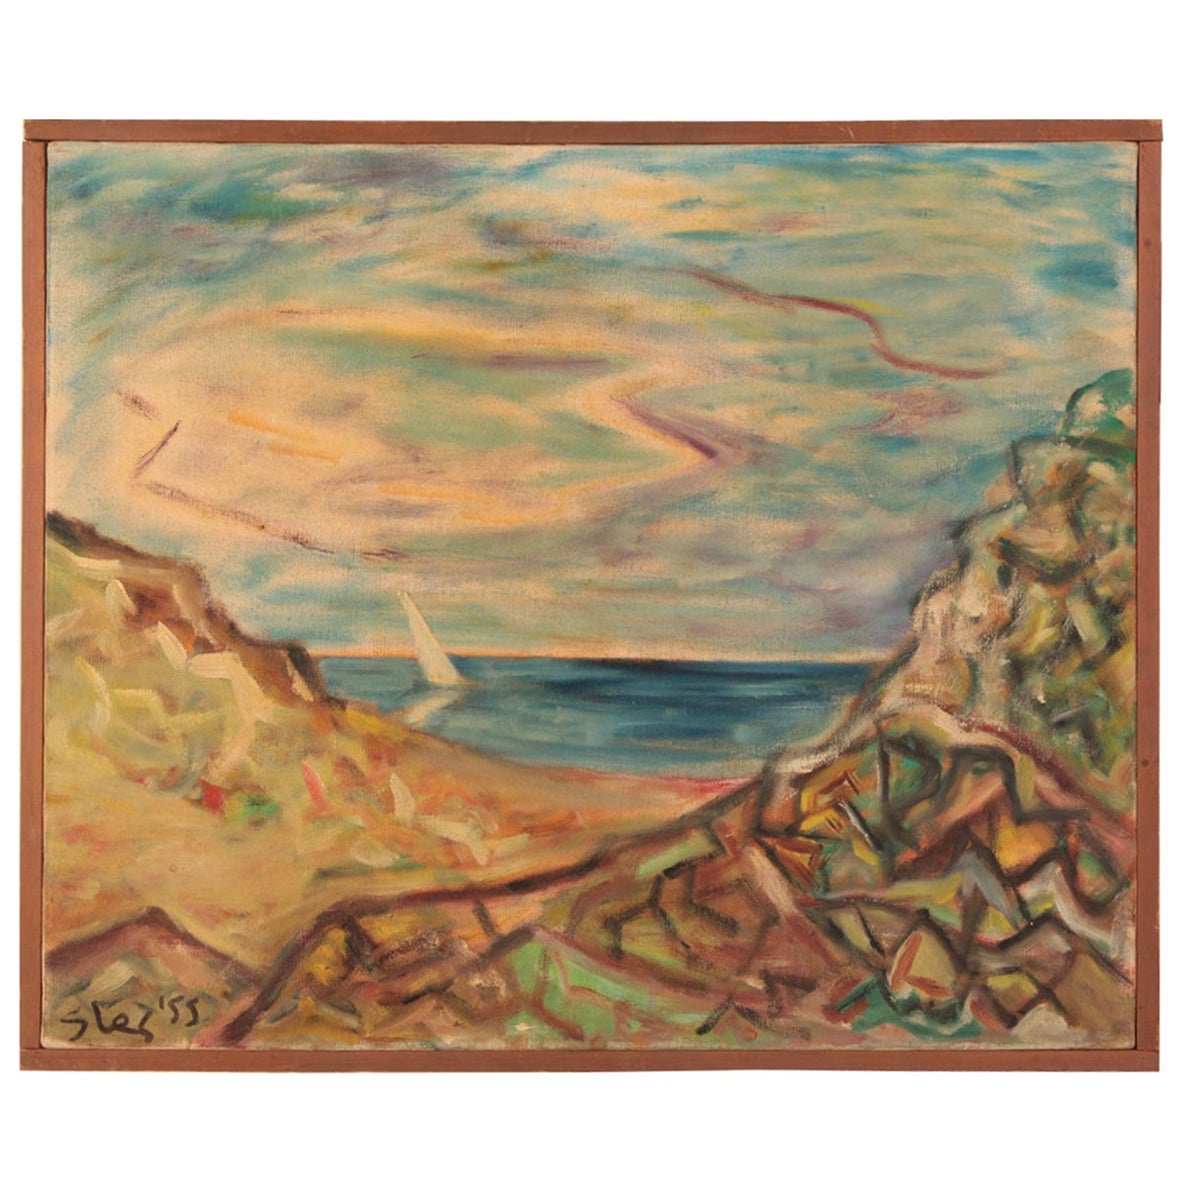 Oil Painting Ocean Scene on Linen by Steven Sles